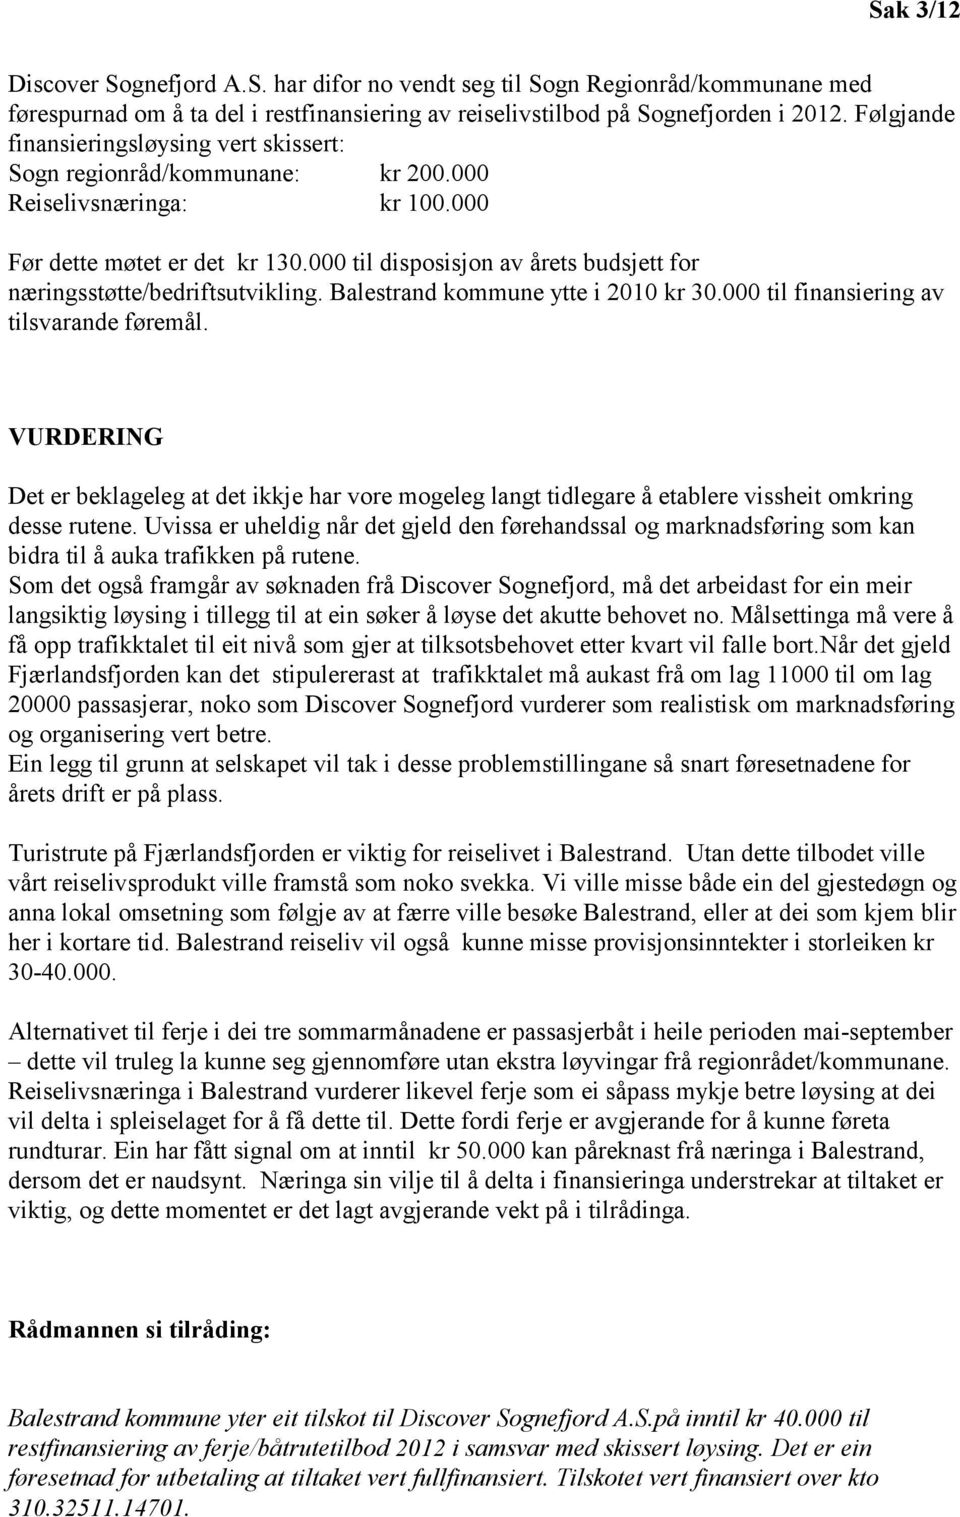 000 til disposisjon av årets budsjett for næringsstøtte/bedriftsutvikling. Balestrand kommune ytte i 2010 kr 30.000 til finansiering av tilsvarande føremål.